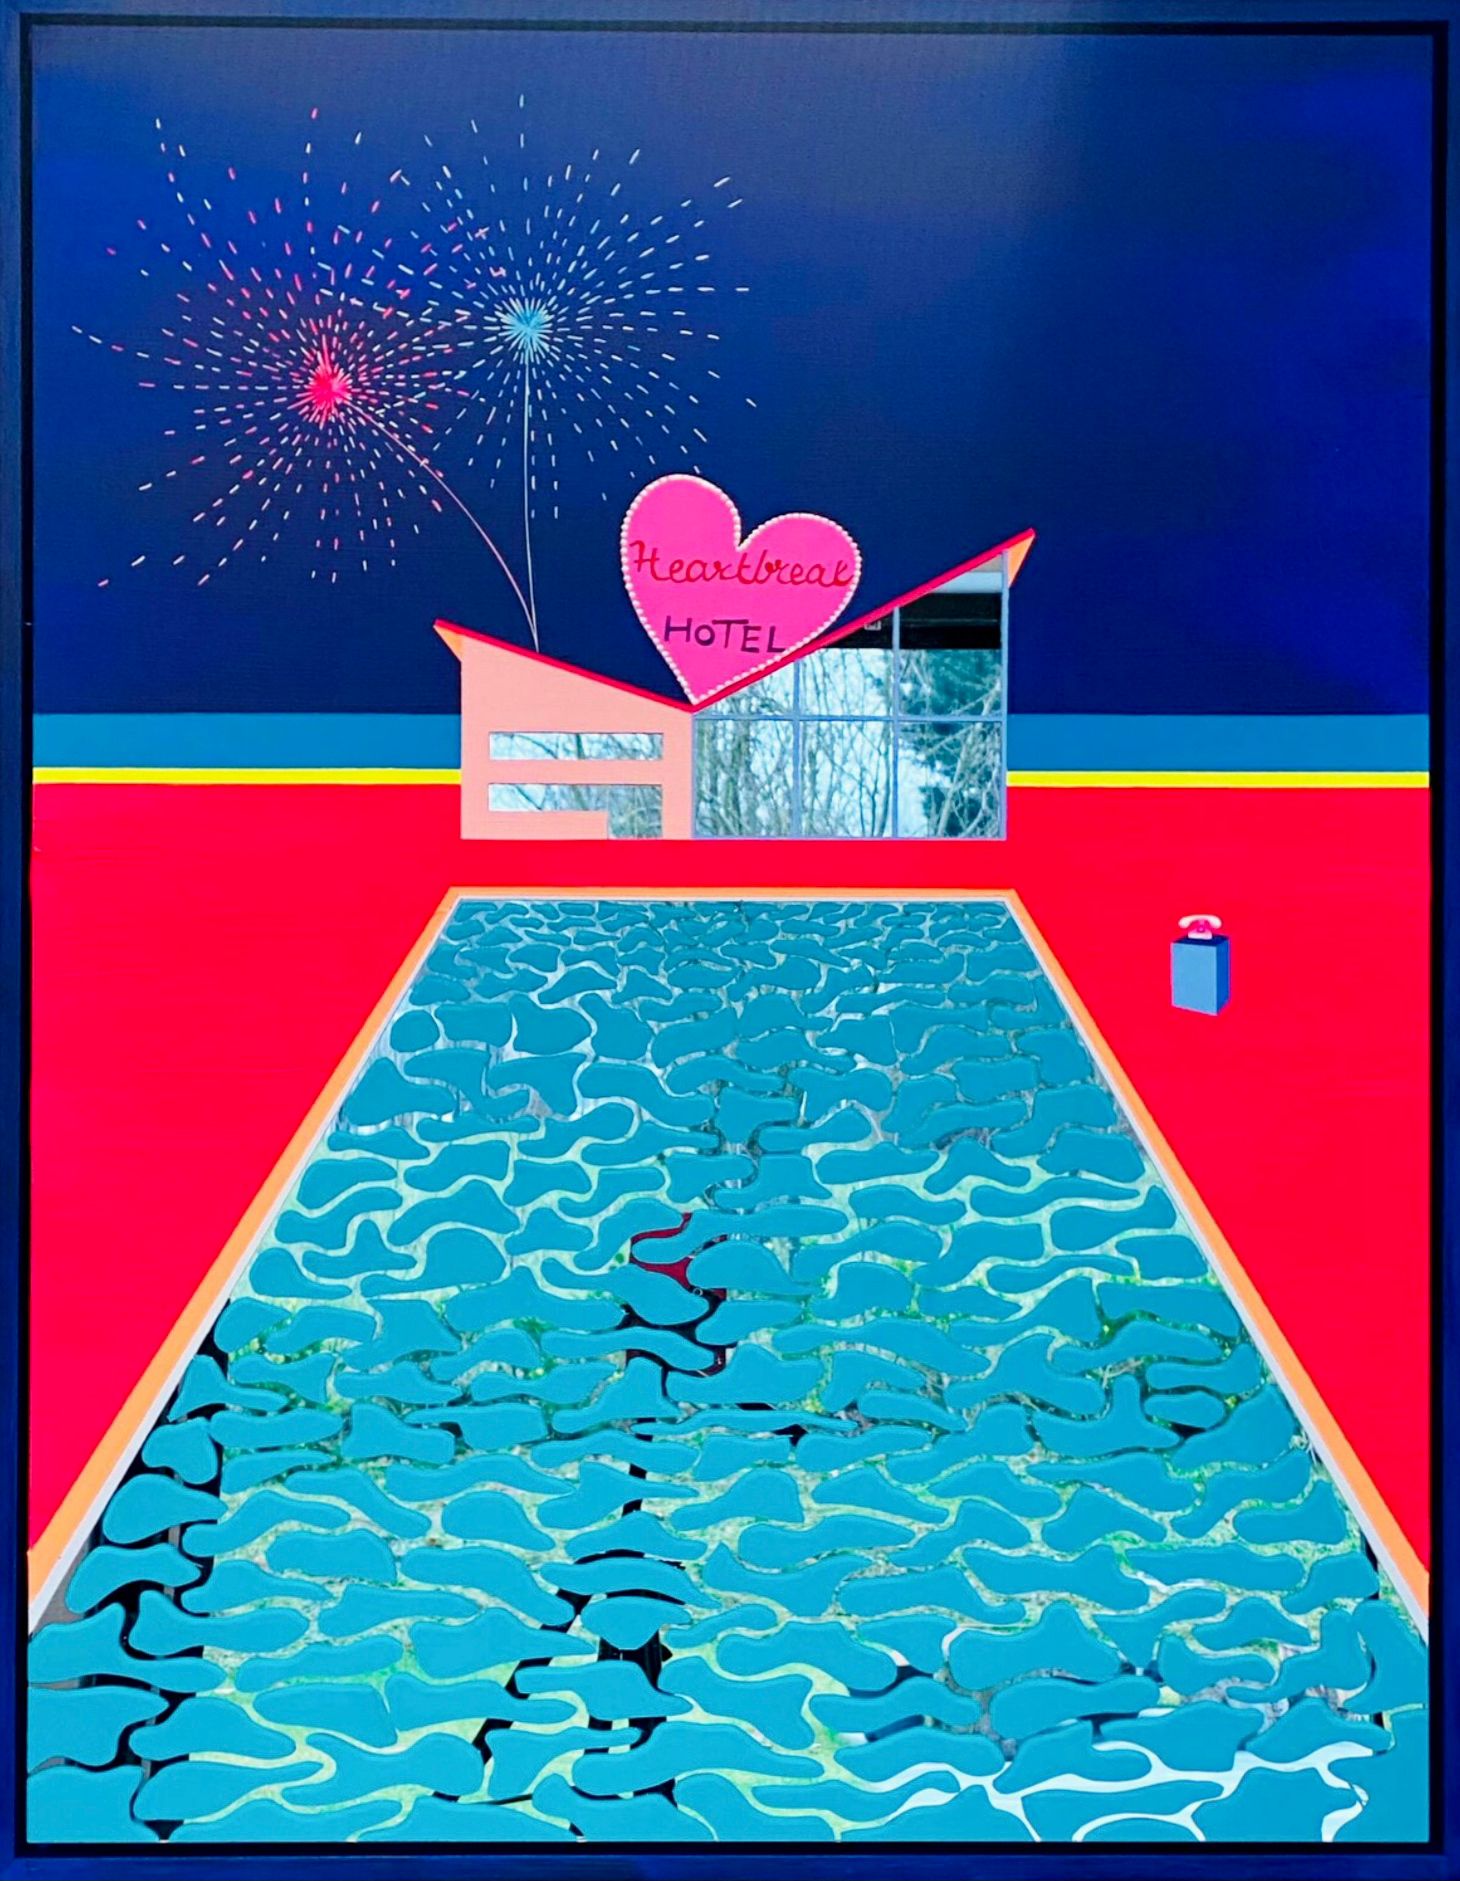 Isabelle Derecque, "Heartbreak hotel" Peinture colorée, dans un lieu mystérieusement coloré, habité par des créatures marines et peint sur des miroirs en plexiglas dans un style pop-up avec des couleurs joyeuses et énergiques. Visualisé par la géométrie, les perspectives, les contrastes et les reflets.